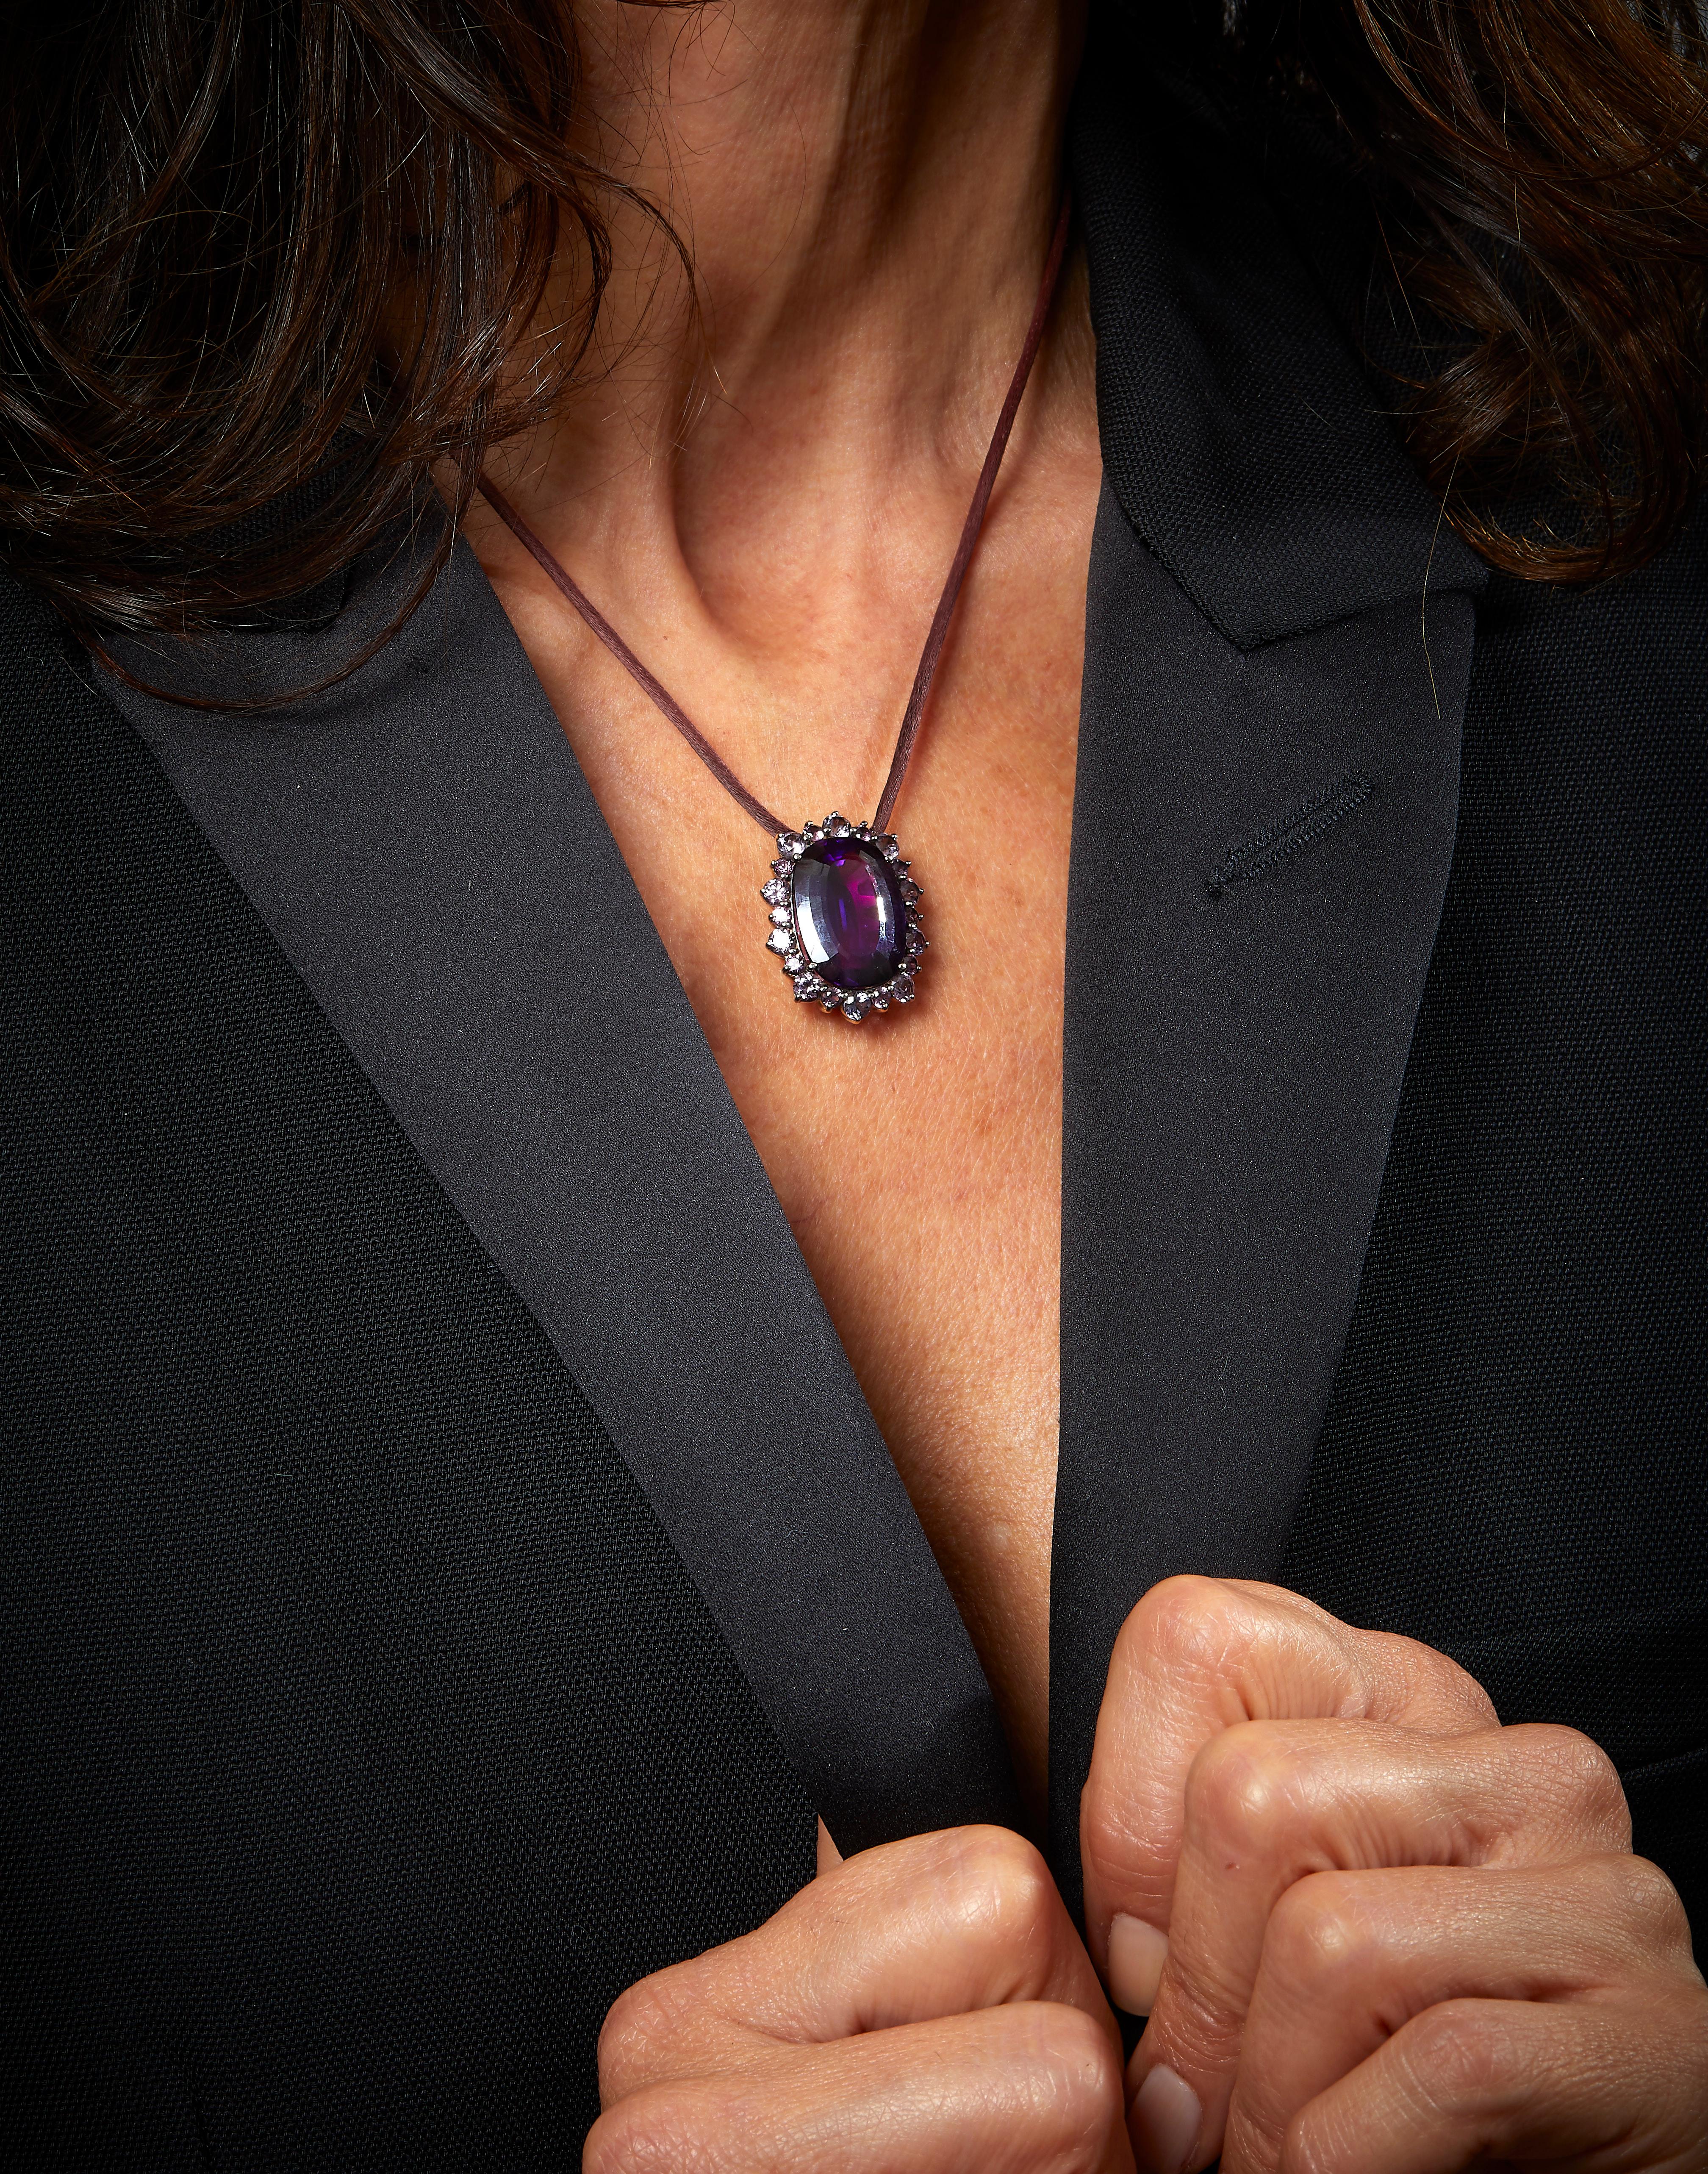 Conçu par Eva Soussana, artiste et fondatrice d'Hera-Jewellery, ce collier pendentif élégant et raffiné de la collection 